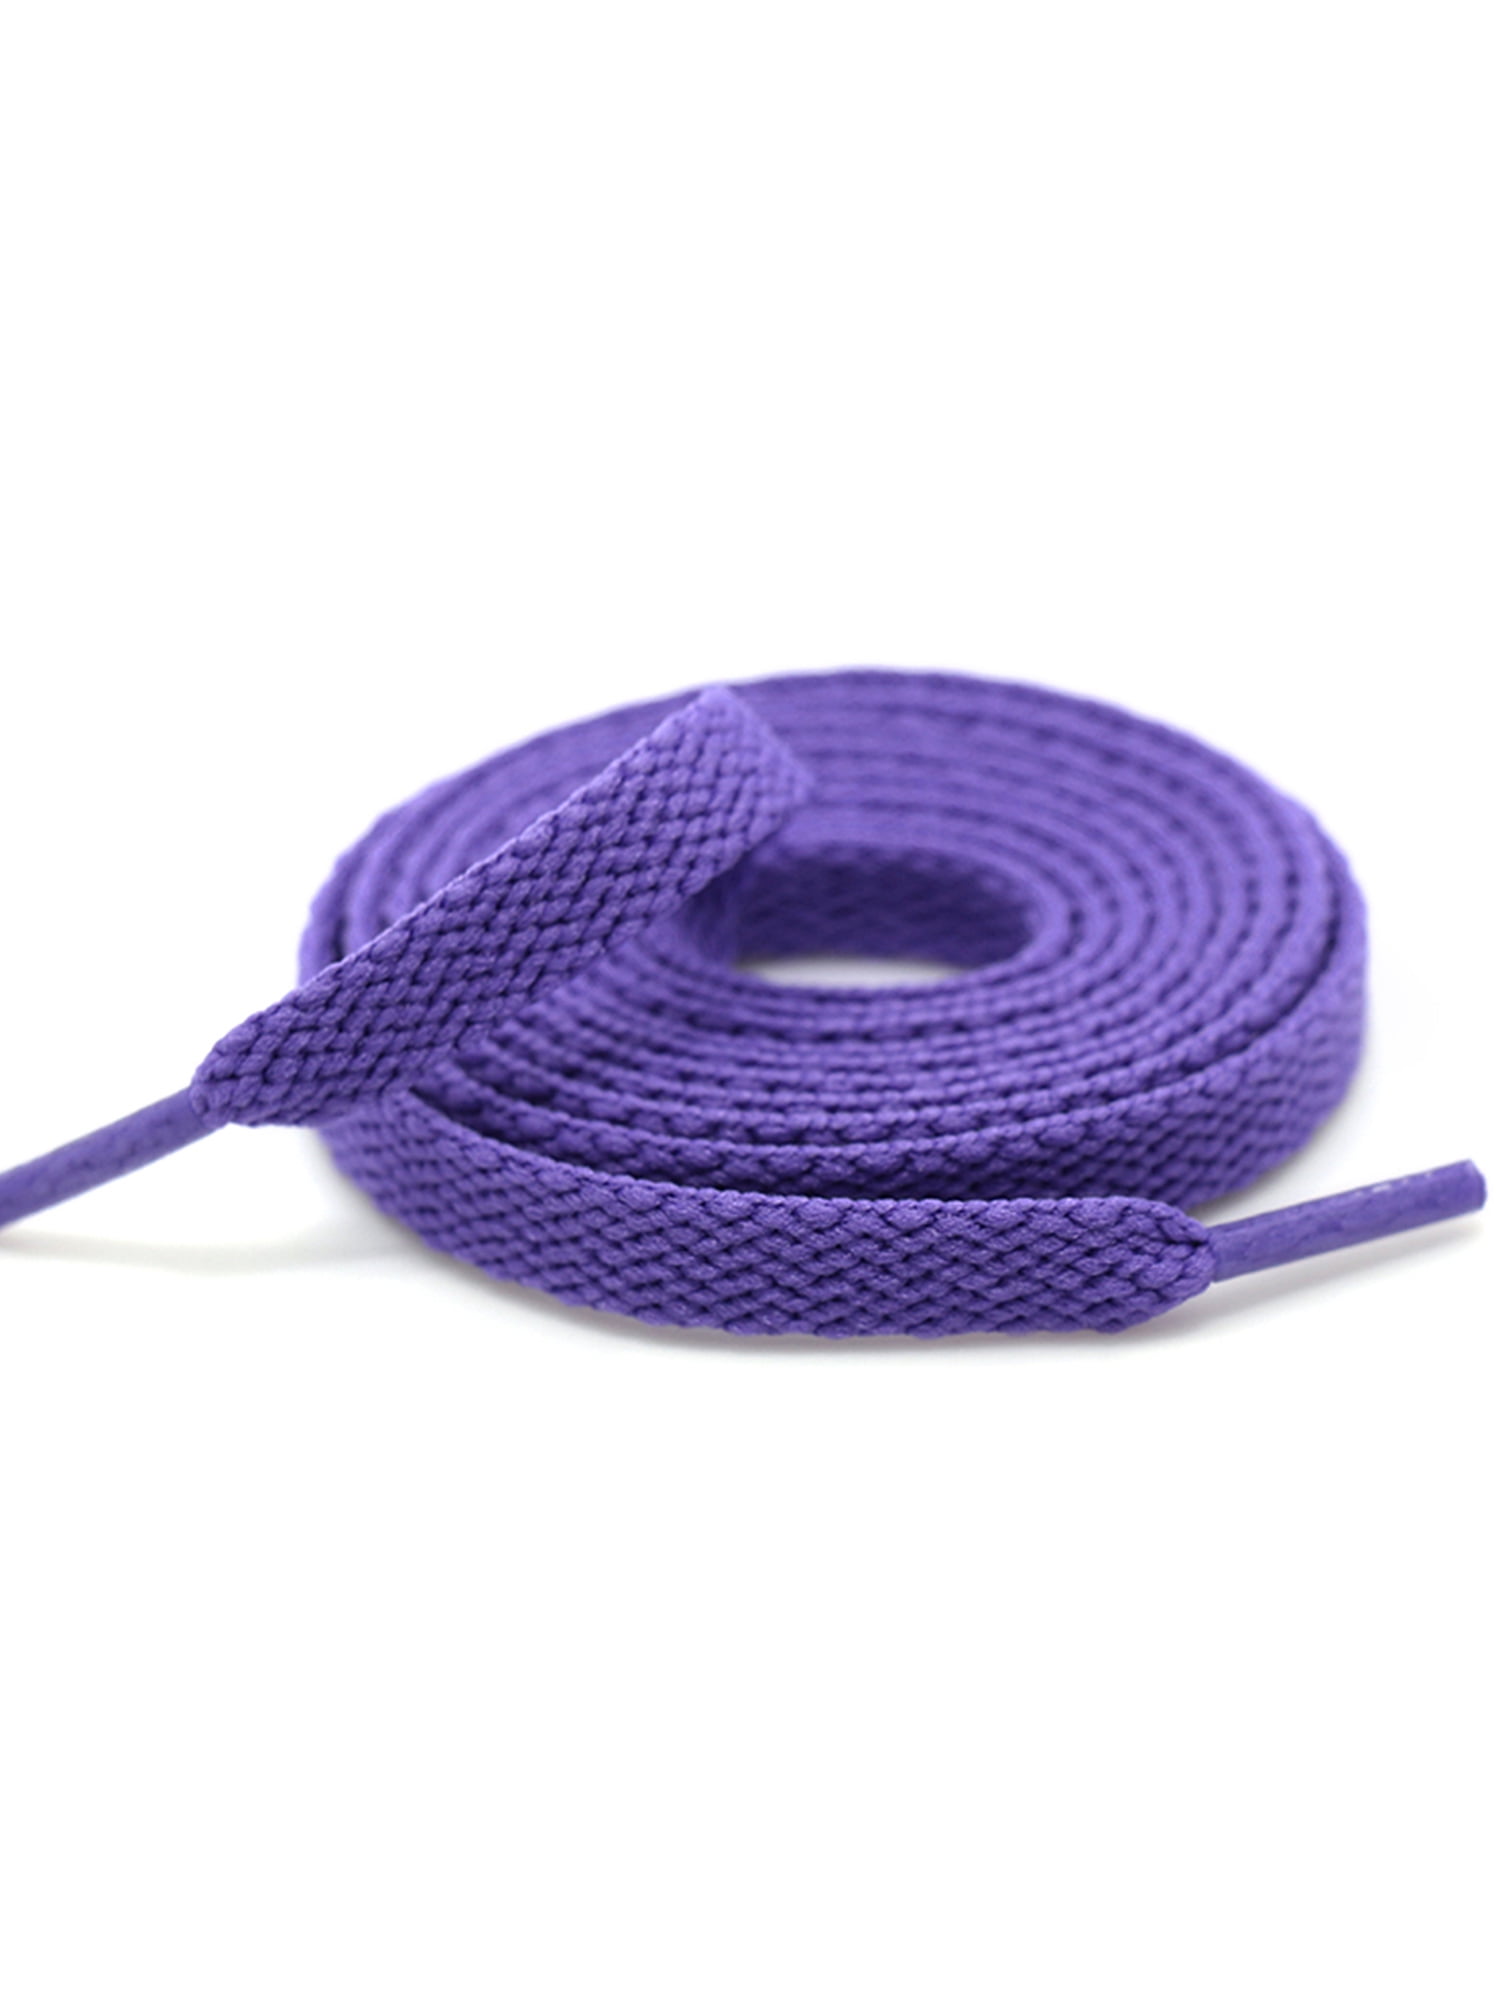 purple shoe strings